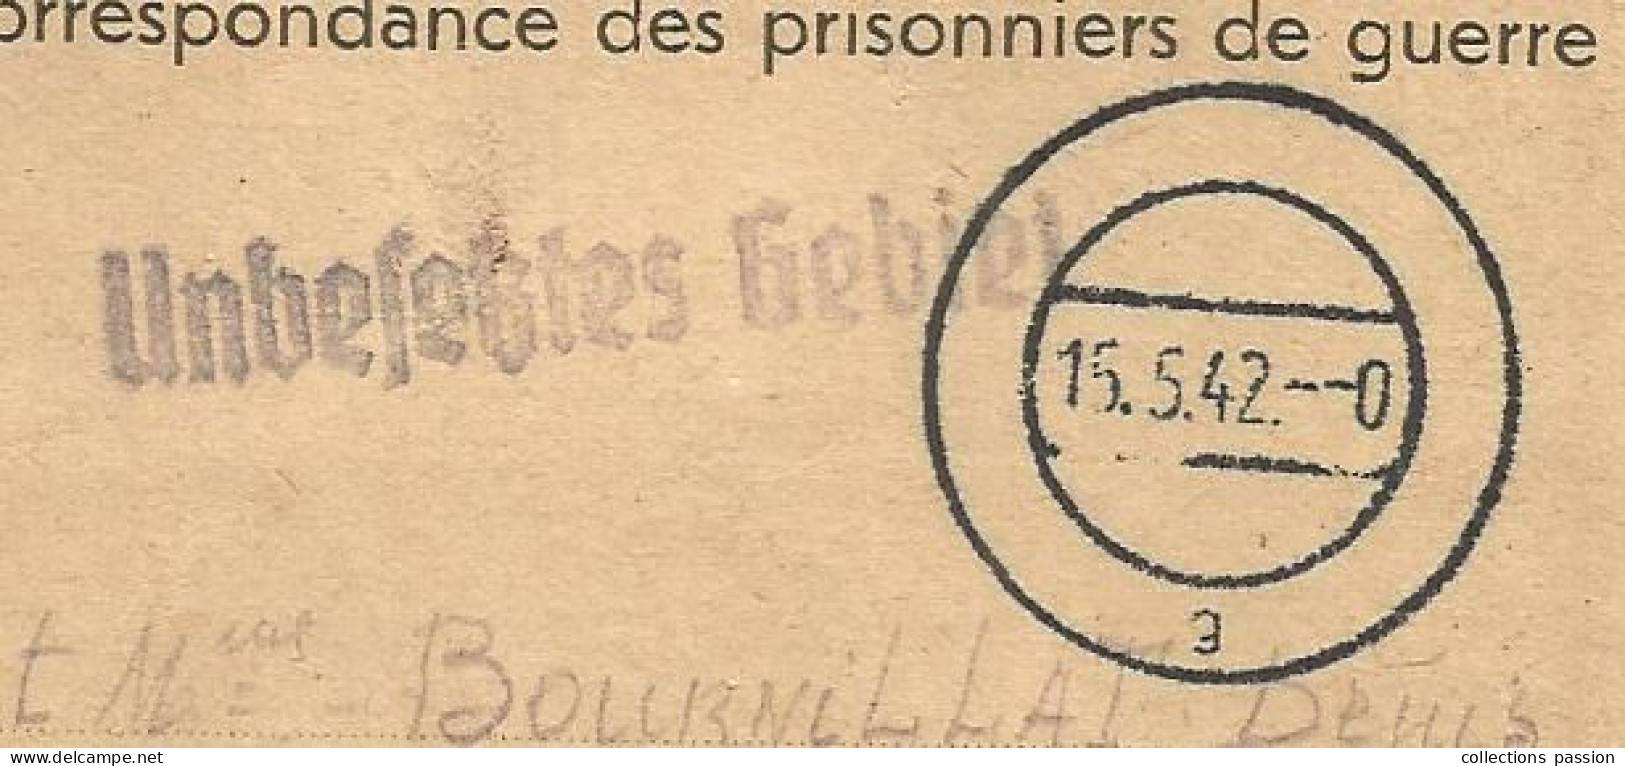 CORRESPONDANCE DES PRISONNIERS DE GUERRE, Kriegsgefangenenpost, Stalag XVIII C Markt Pongau, 1942 - Courriers De Prisonniers